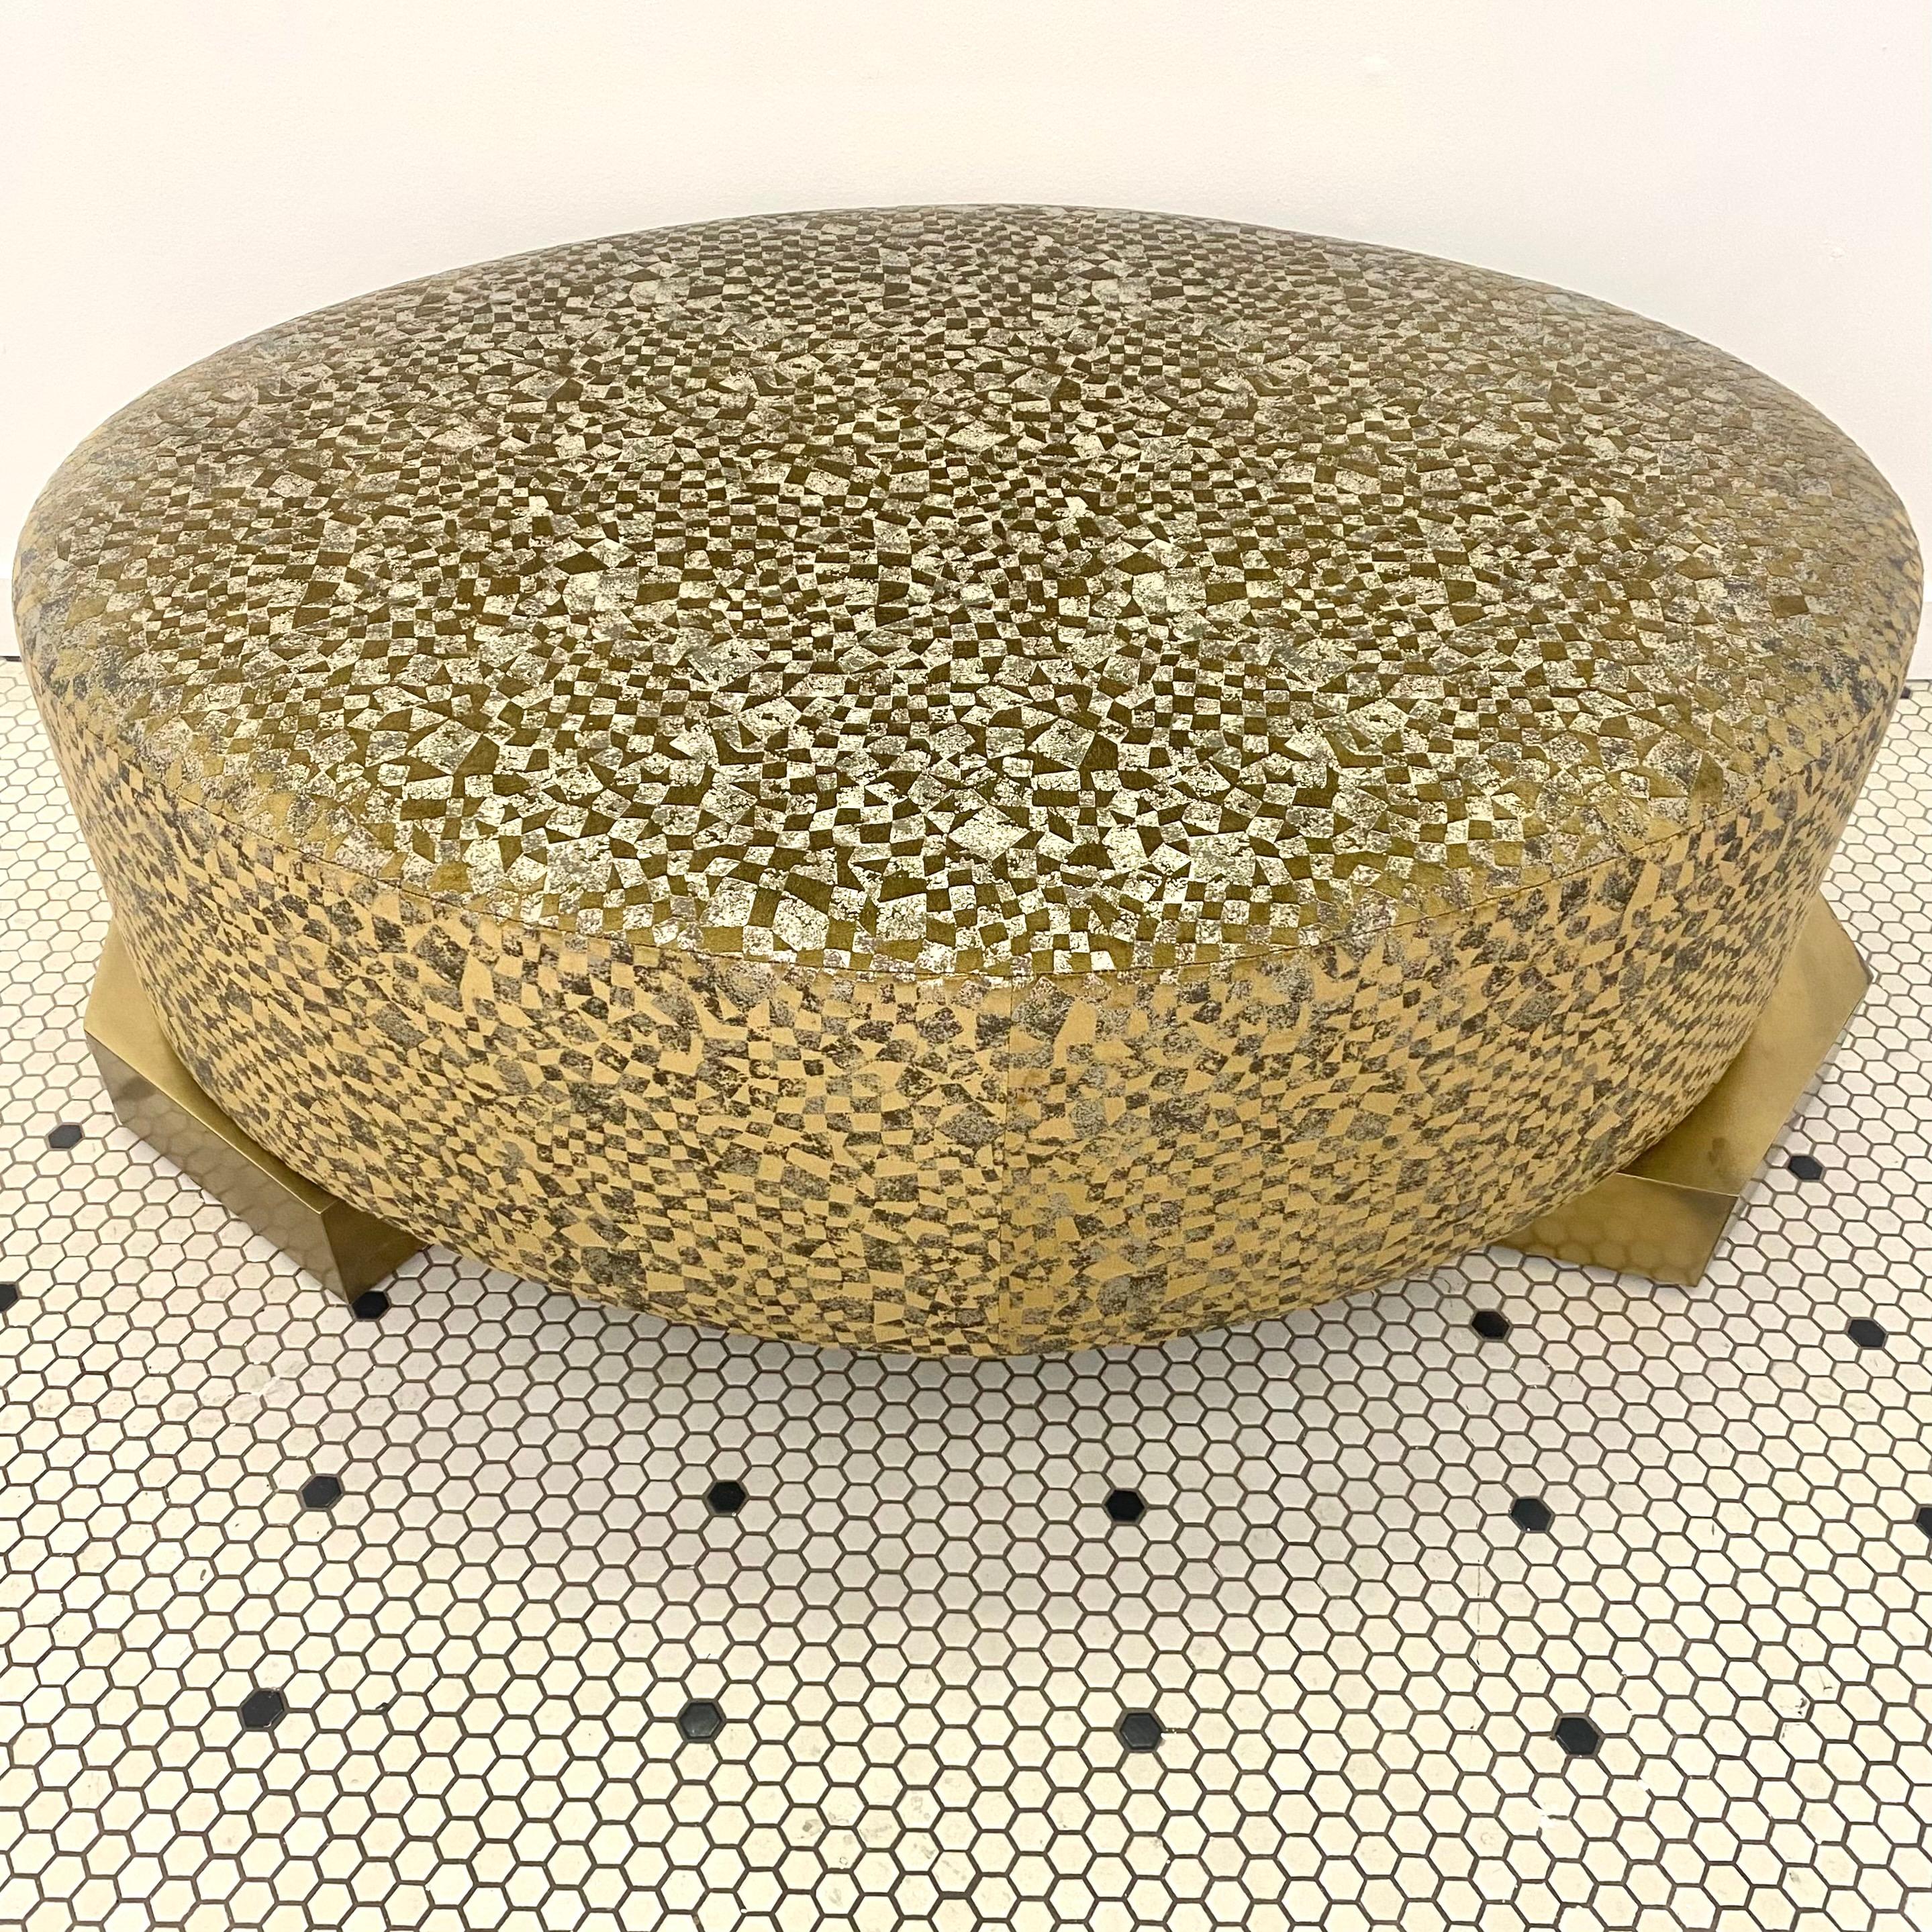 Ce superbe ottoman présente un tissu en mosaïque métallique tendu pour former un ovale robuste. Le coussin du pouf repose solidement sur deux pieds géométriques asymétriques en bois recouverts de laiton. La lumière se reflète sur le tissu à motifs